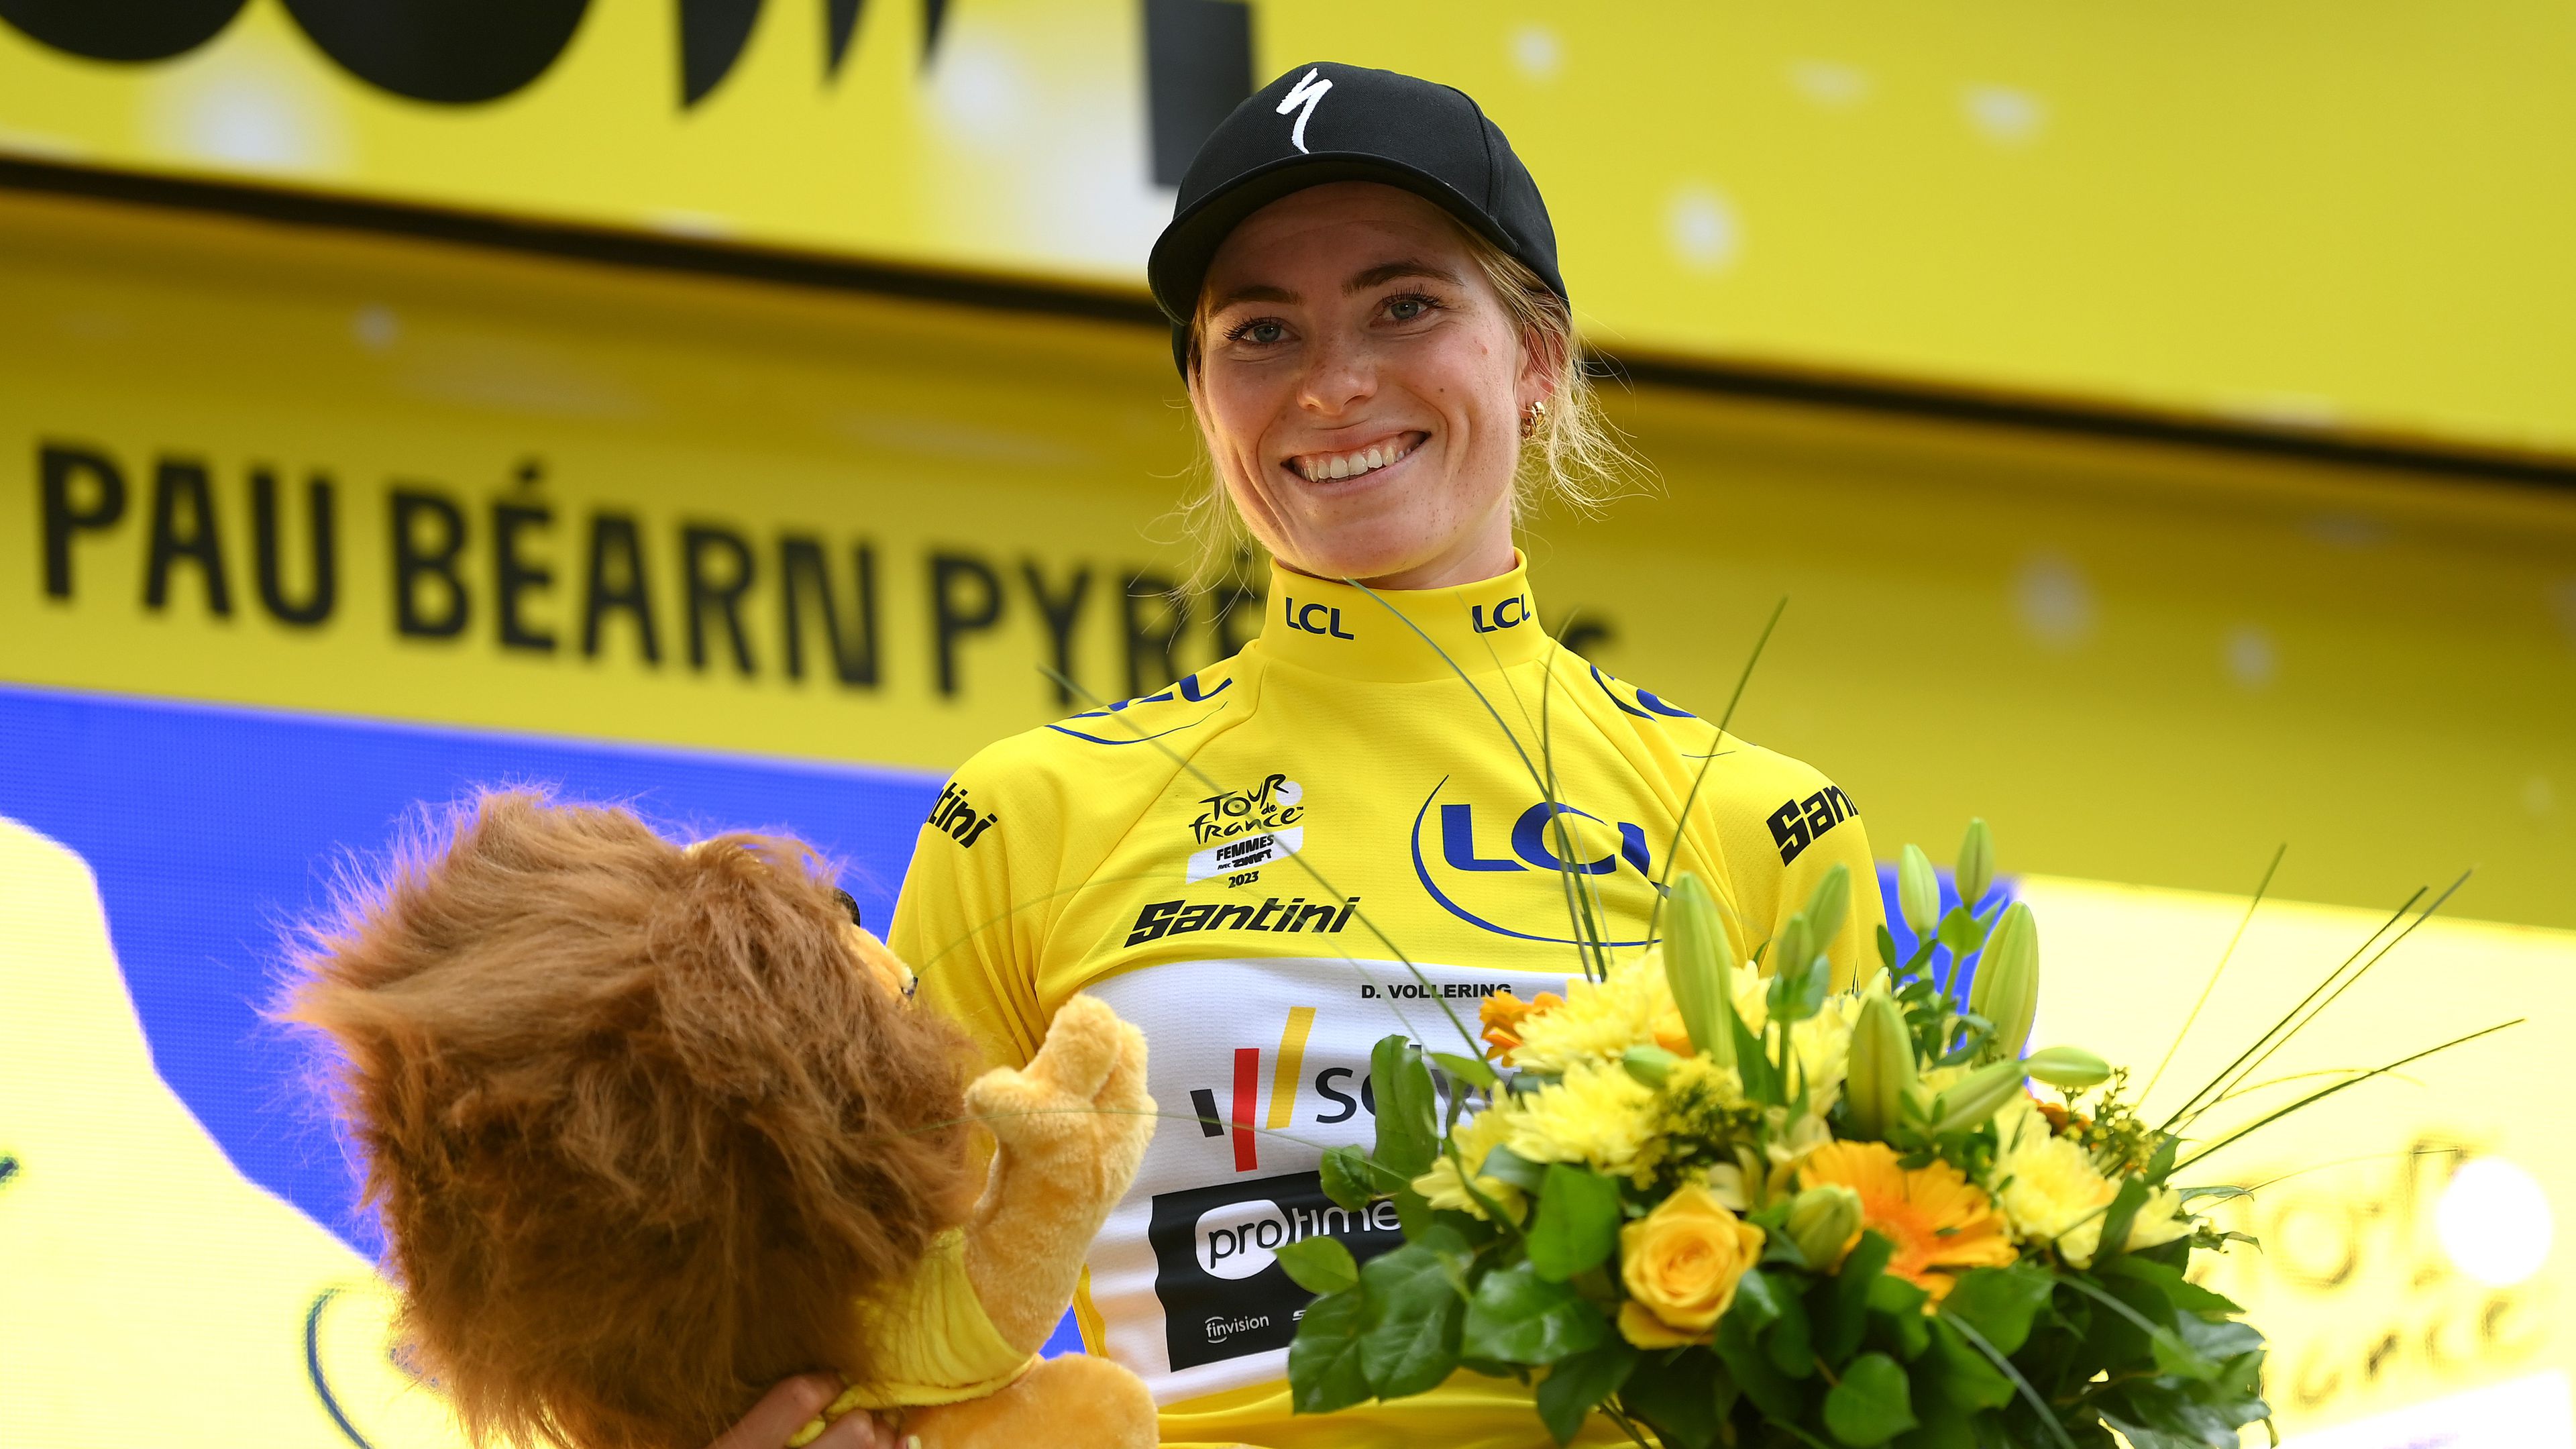 Holland versenyző nyerte meg a női Tour de France-ot